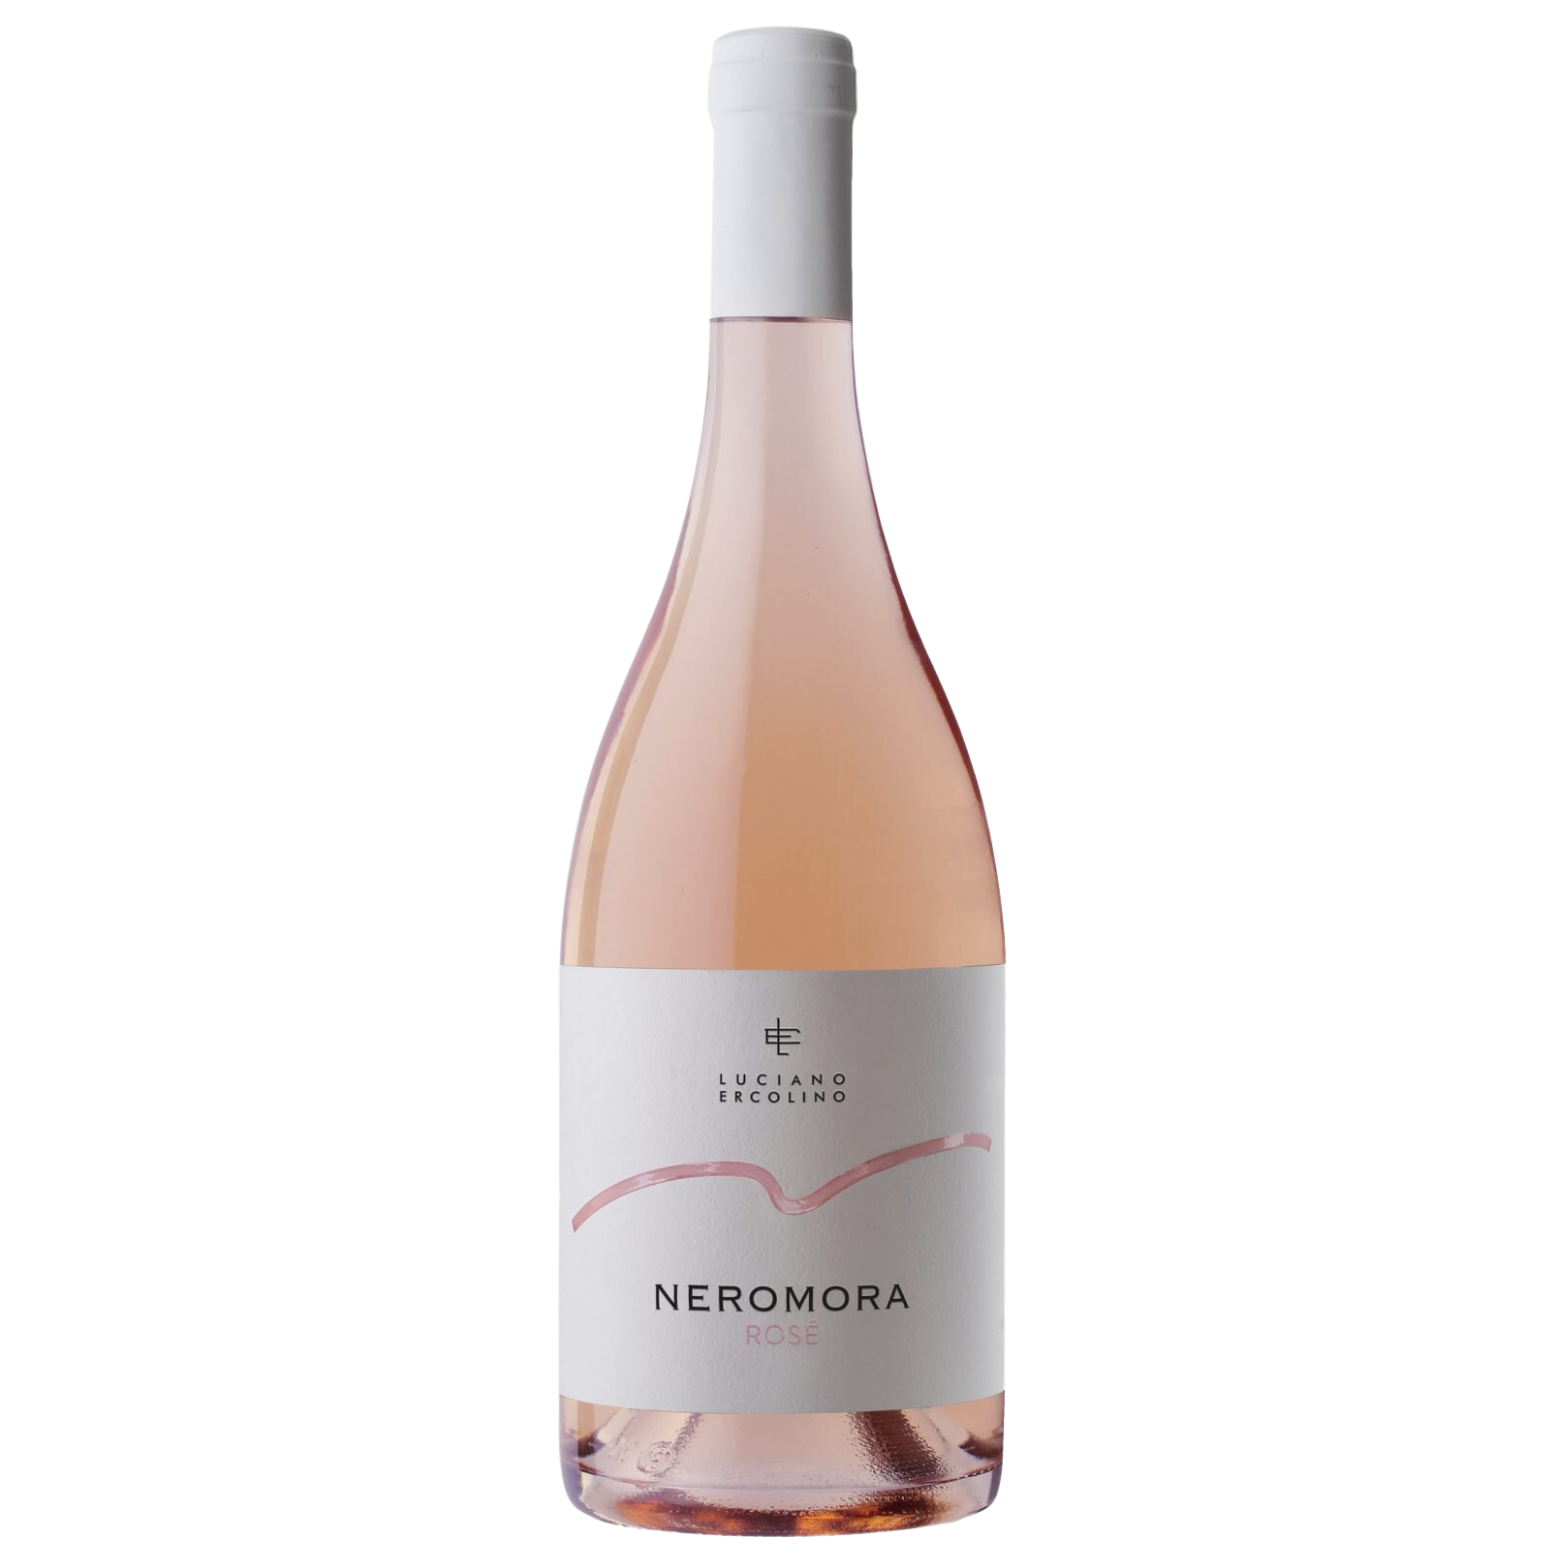 Neromora Rosé – 2021 Weingut Vinosia Luciano Ercolino